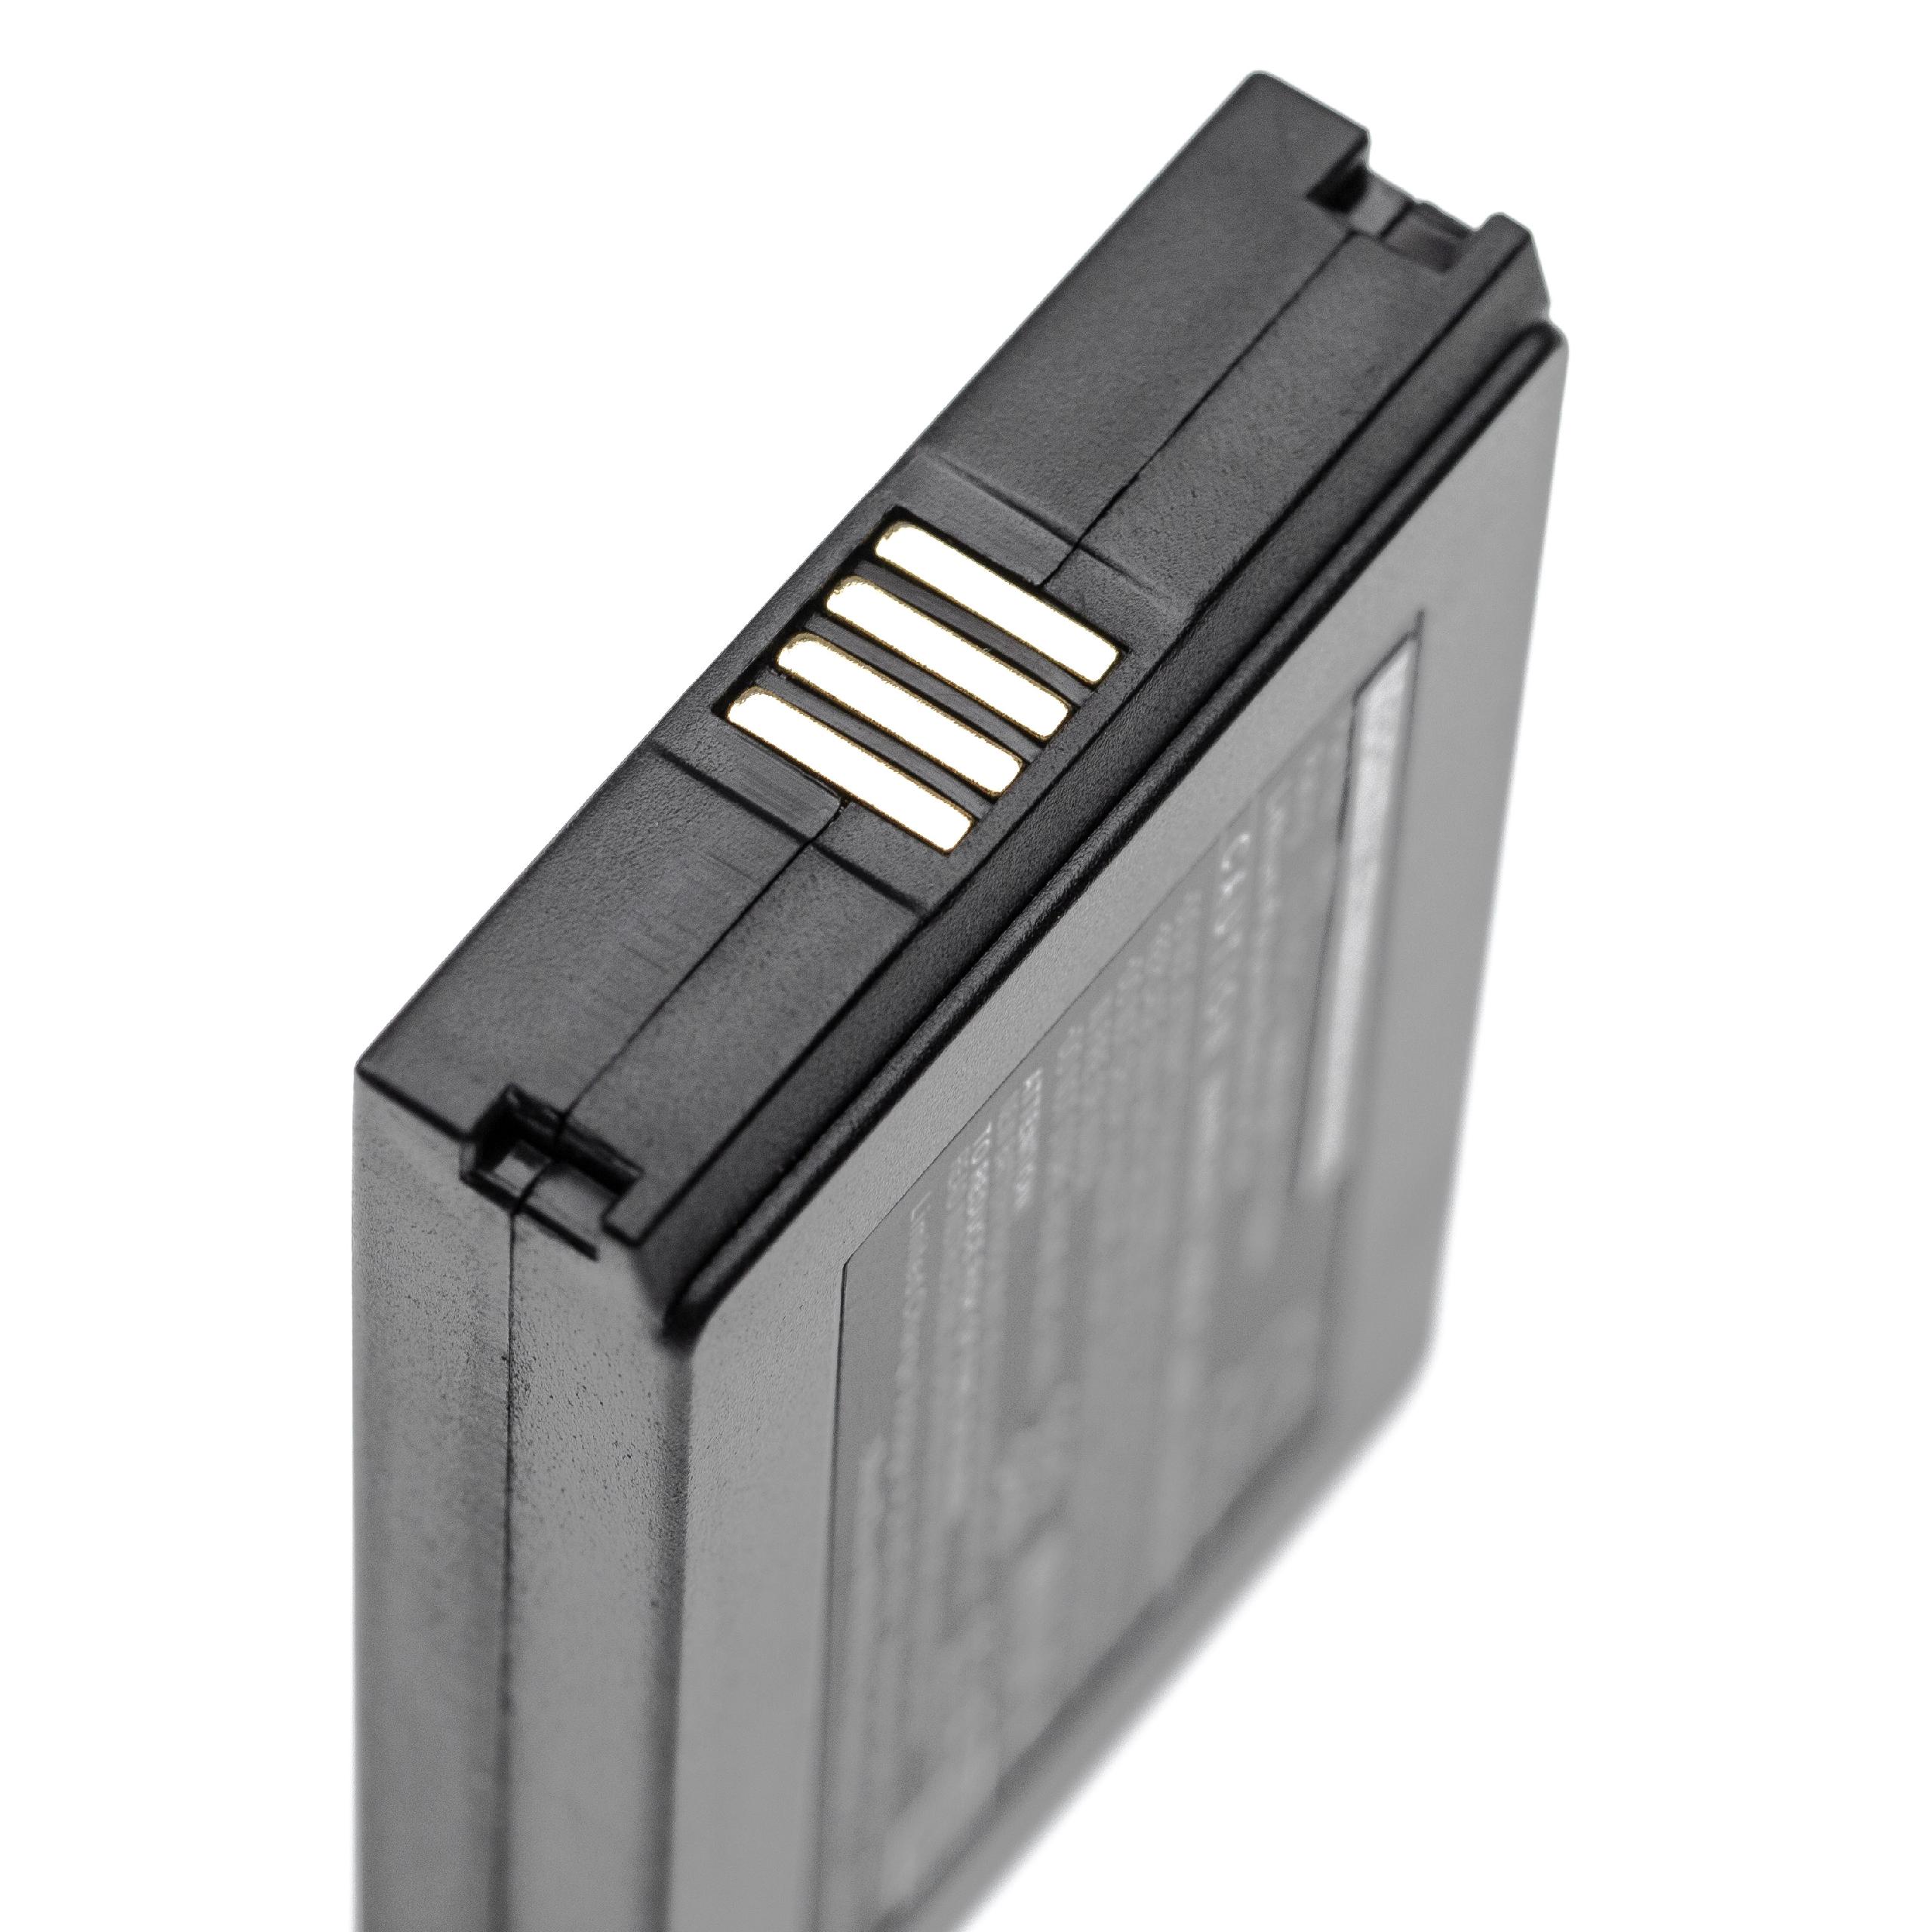 Barcodescanner-Akku als Ersatz für Vectron B60 - 3000mAh 3,7V Li-Polymer